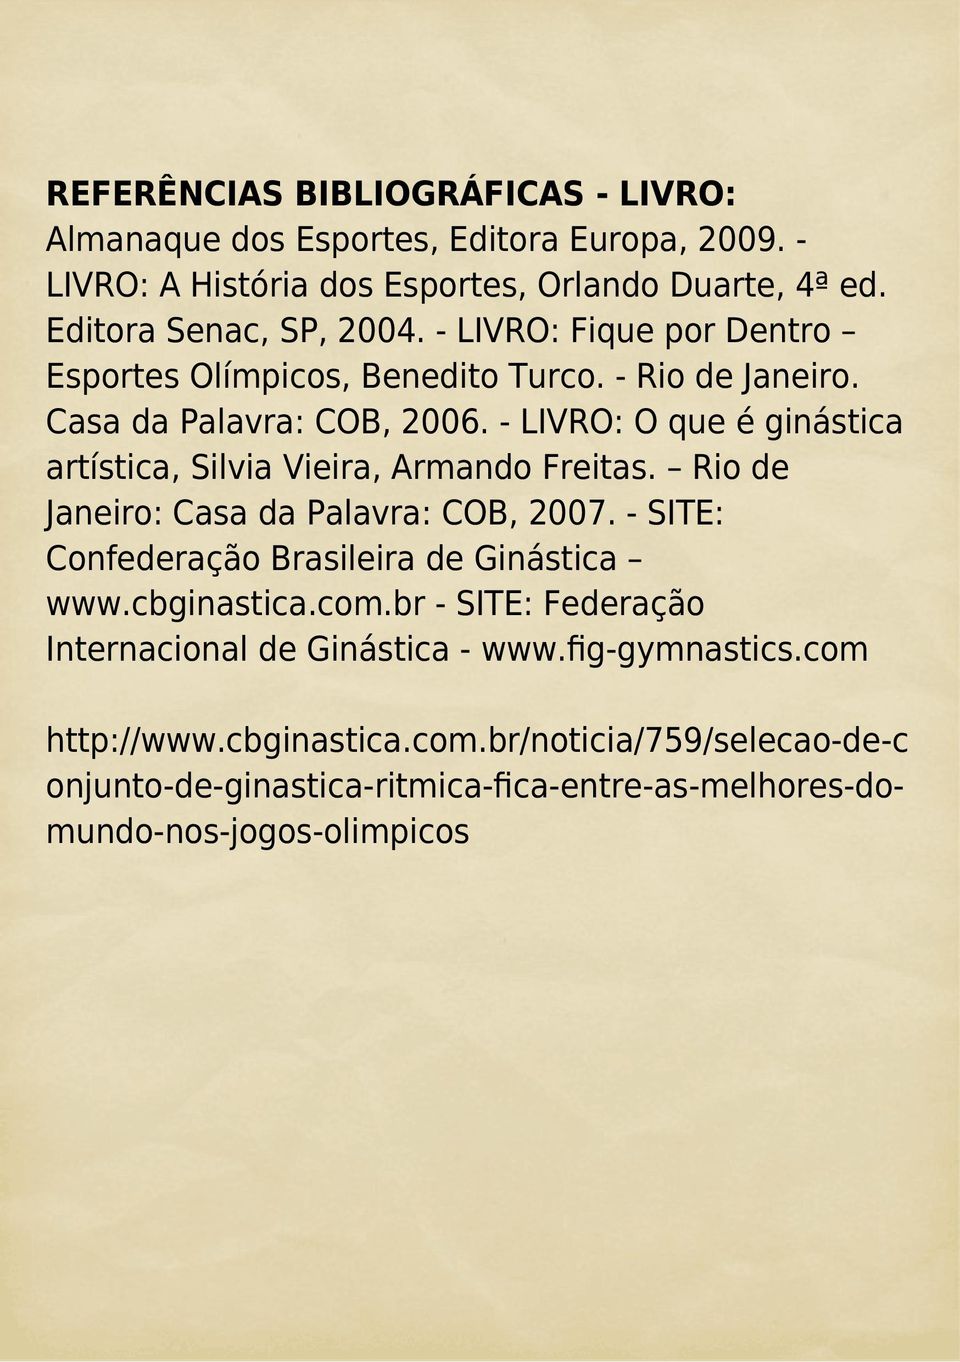 - LIVRO: O que é ginástica artística, Silvia Vieira, Armando Freitas. Rio de Janeiro: Casa da Palavra: COB, 2007. - SITE: Confederação Brasileira de Ginástica www.